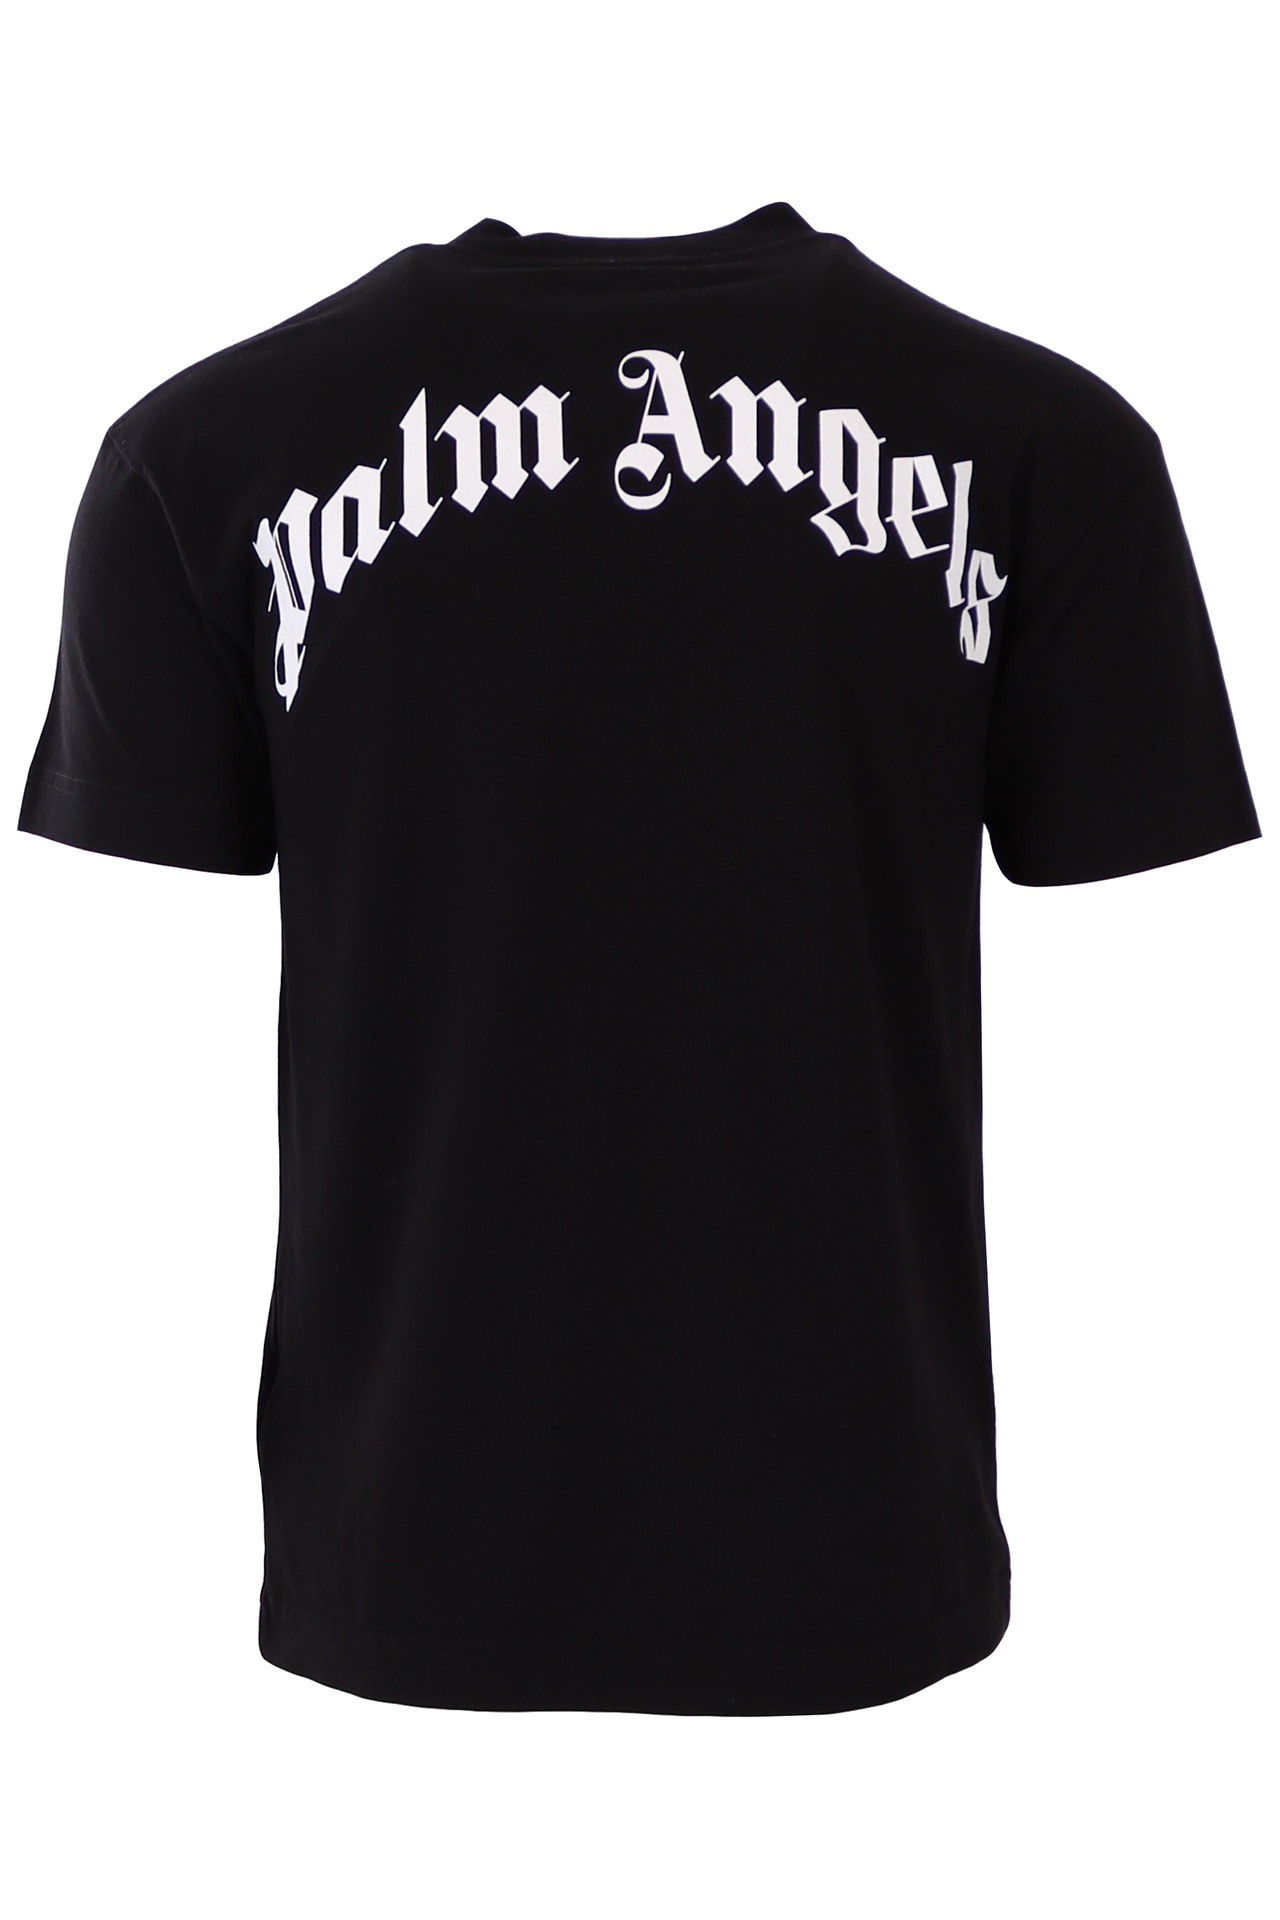 Palm Angels - Palm Angels T-shirt preta com urso - BLS Fashion